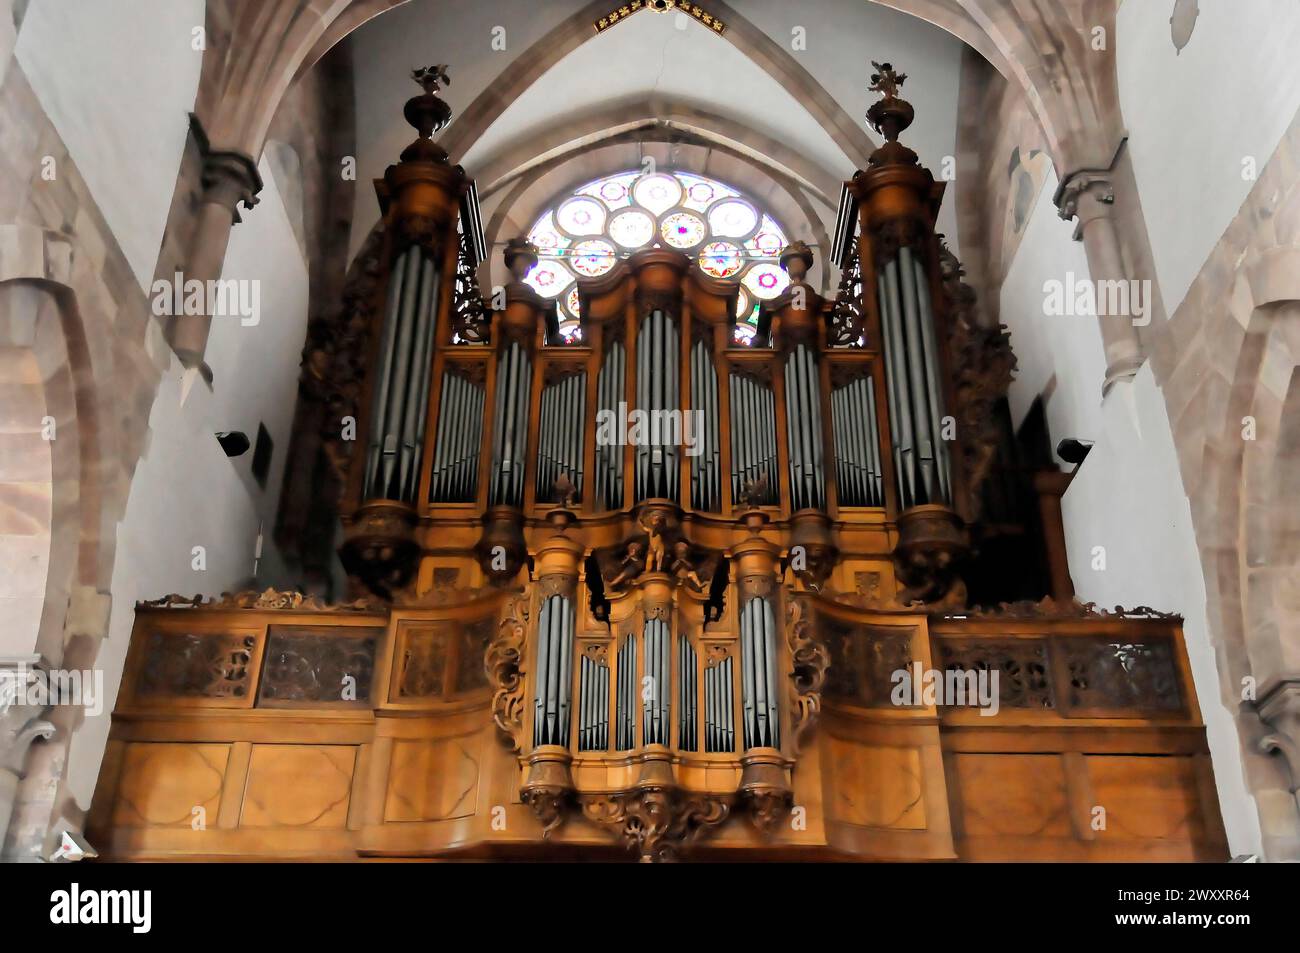 L'église luthérienne St Thomas, l'église Saint Thomas de Strasbourg, Alsace, grand orgue d'église avec des éléments de style gothique et des sculptures sur bois Banque D'Images